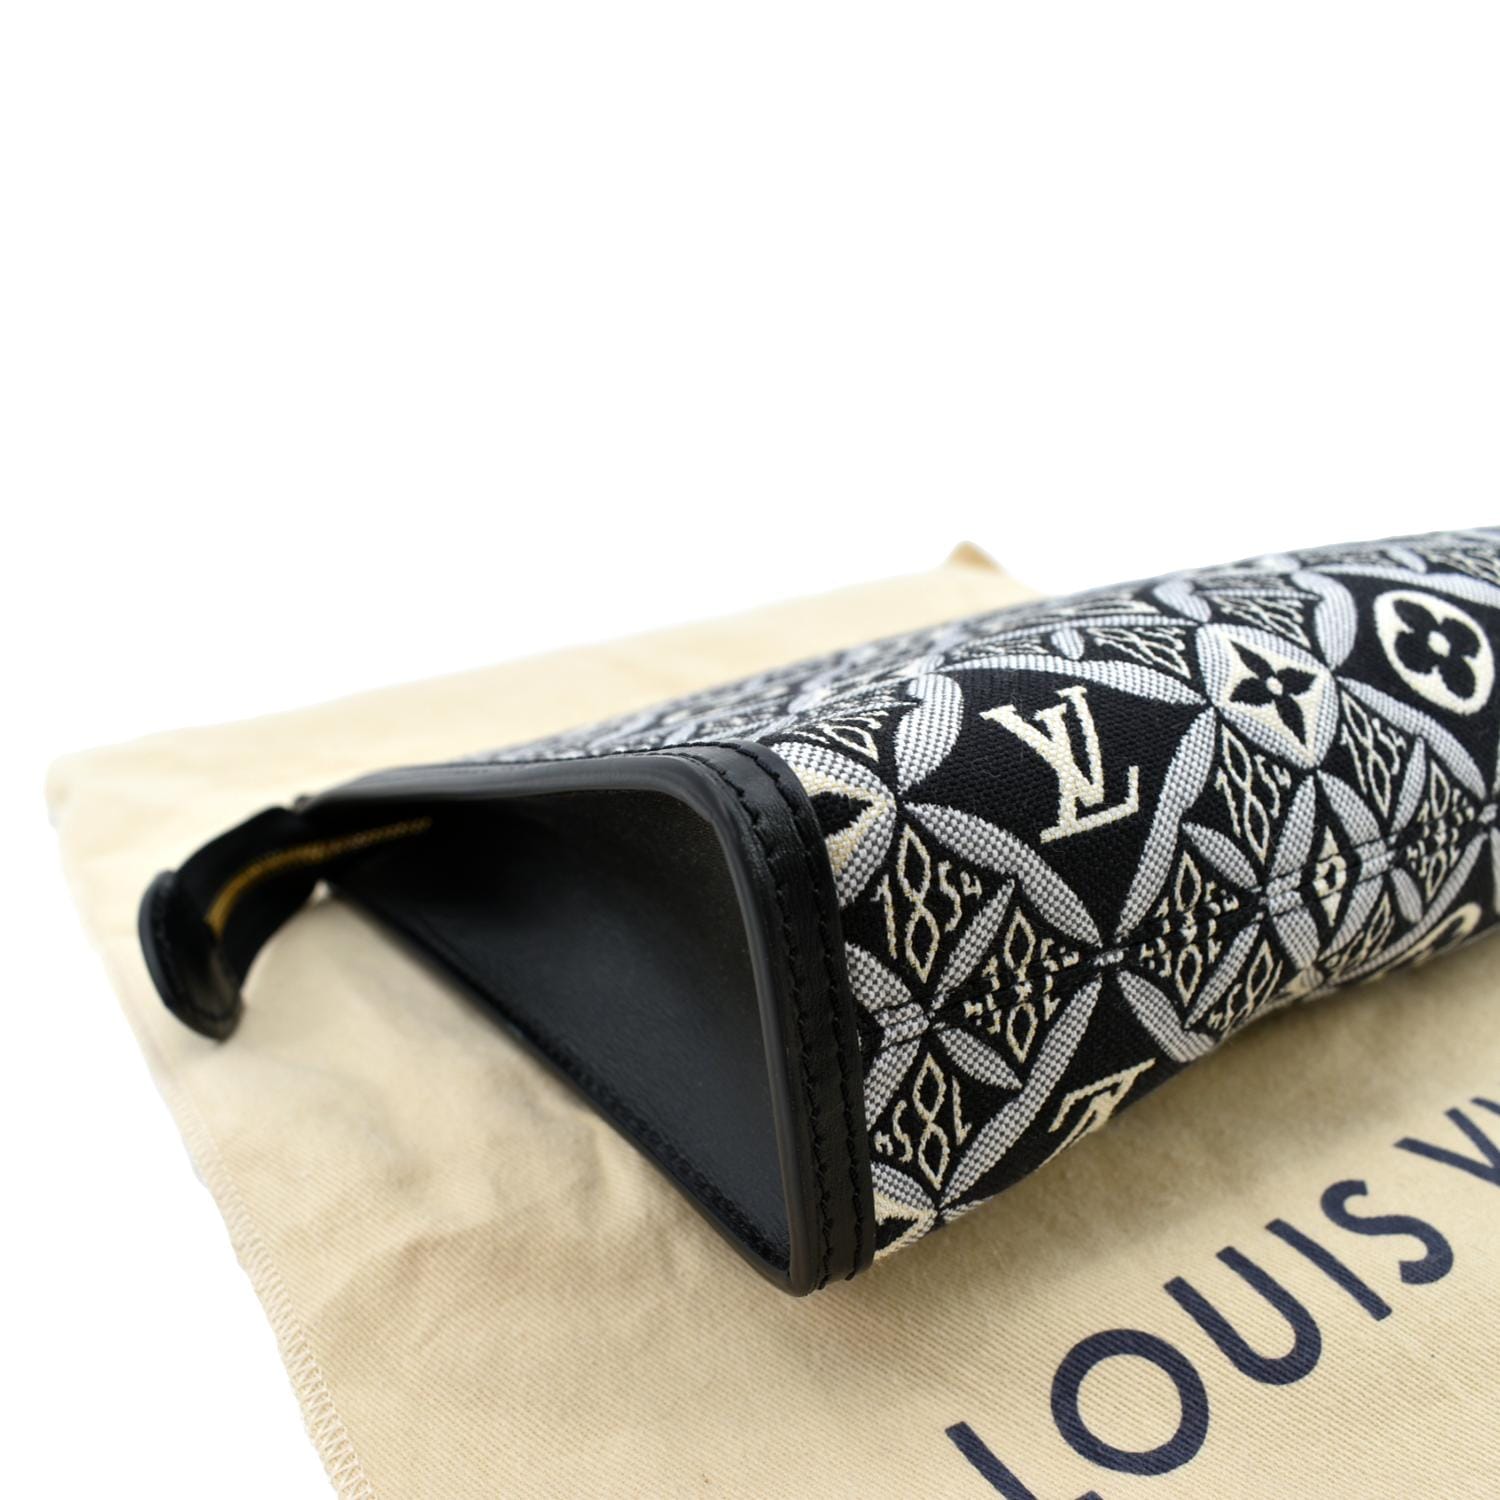 Louis Vuitton Since 1854 Clutch Bag